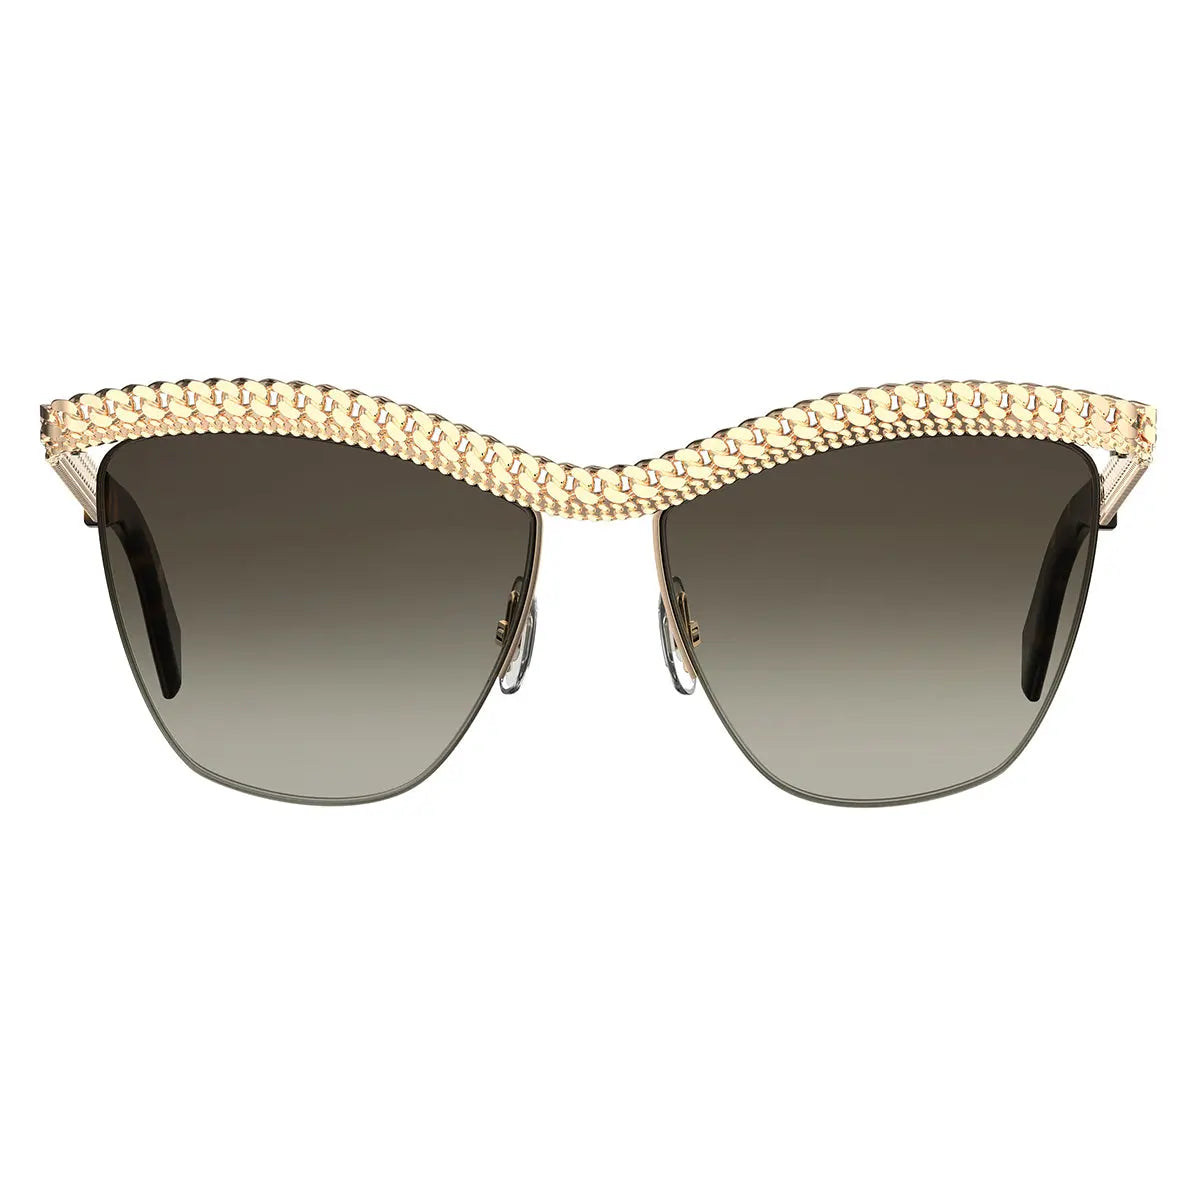 Nile Cat Eye Sunglasses, SK163-P 32G, Light Gold